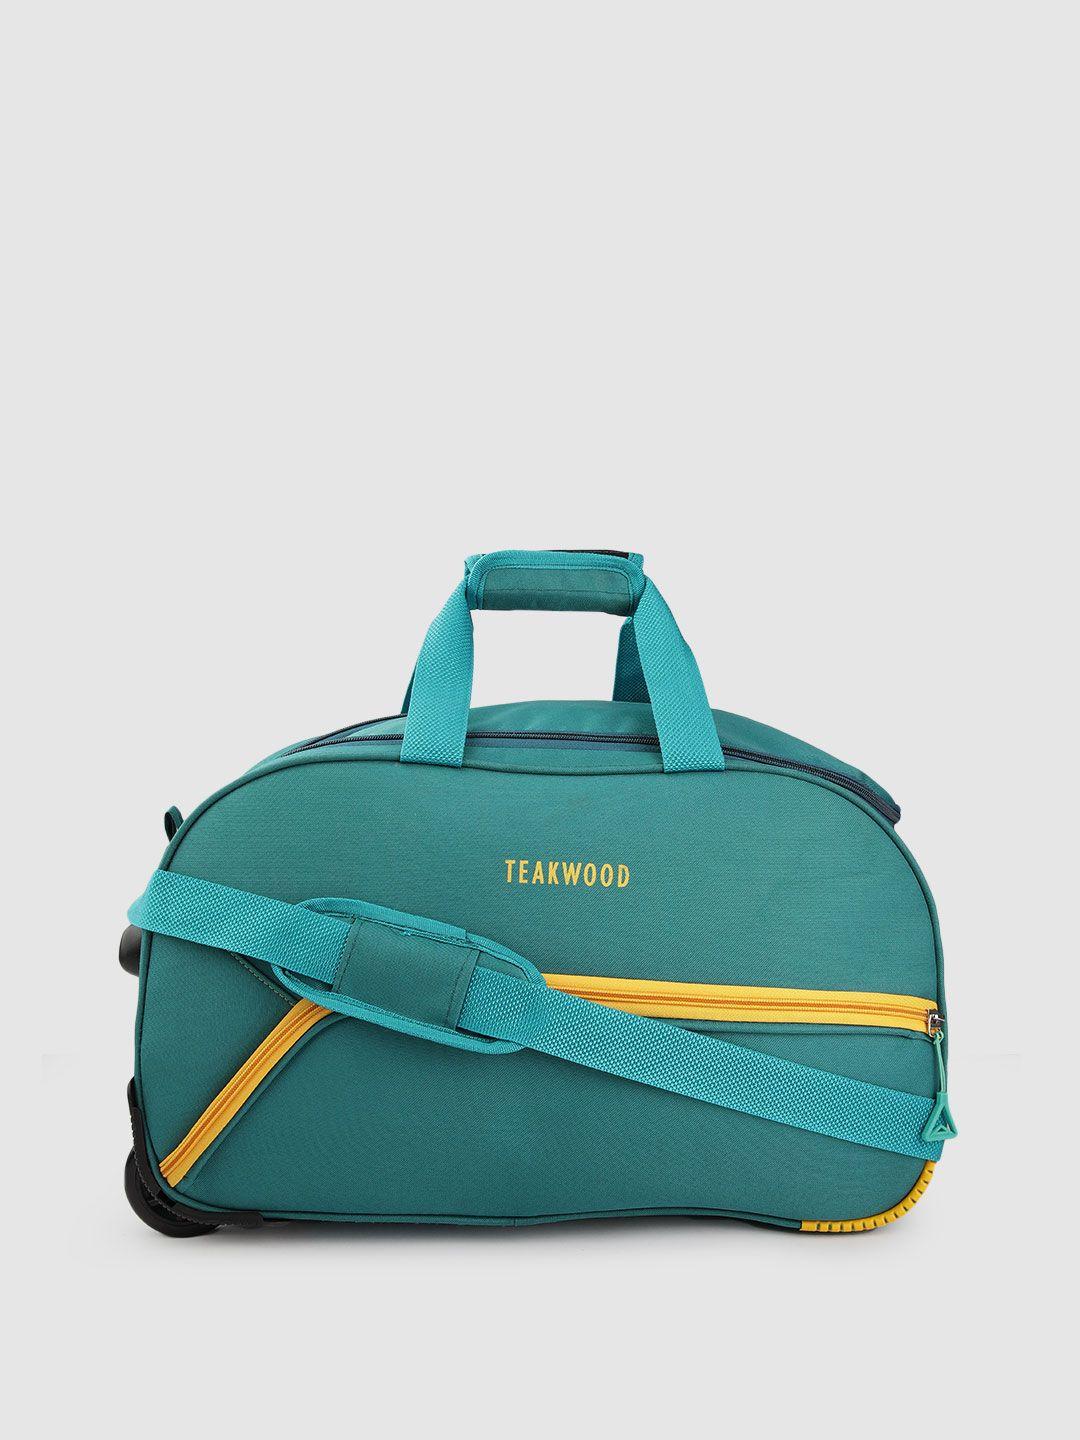 teakwood leathers medium duffle bag- 60 liters